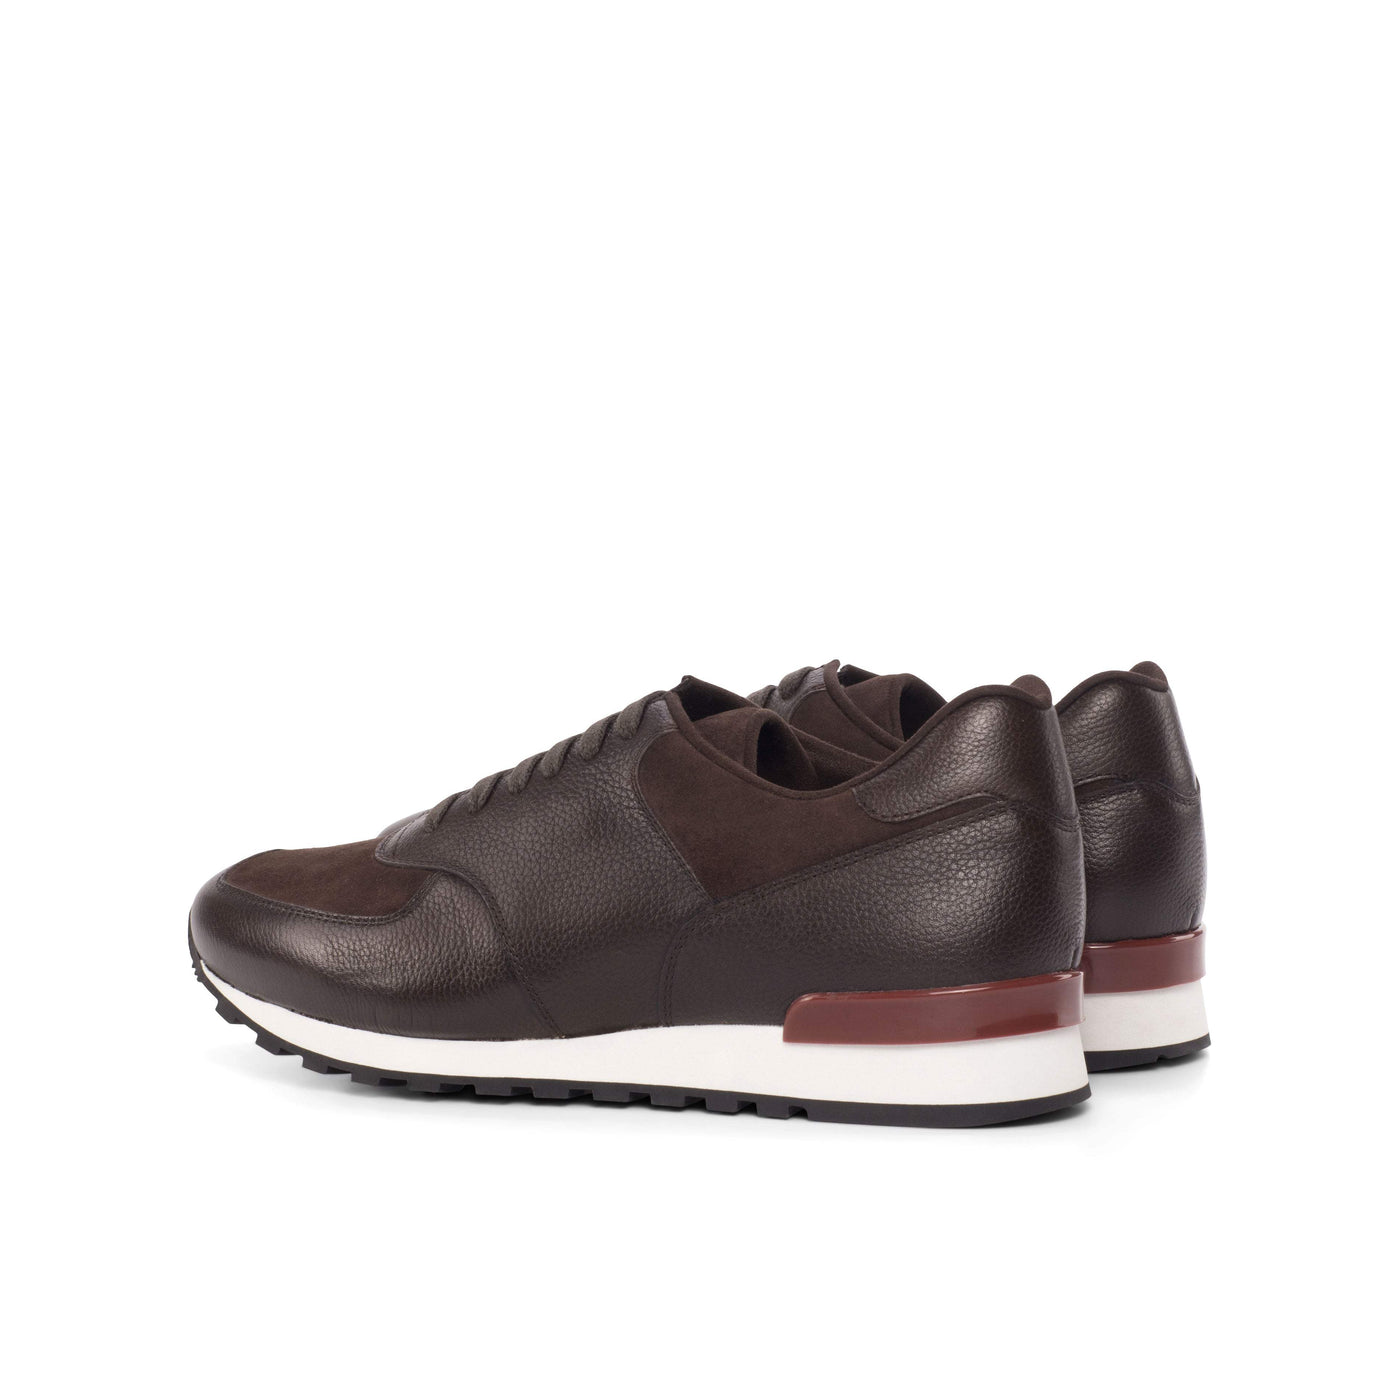 Men's Jogger Sneakers Leather Brown Dark Brown 4475 4- MERRIMIUM